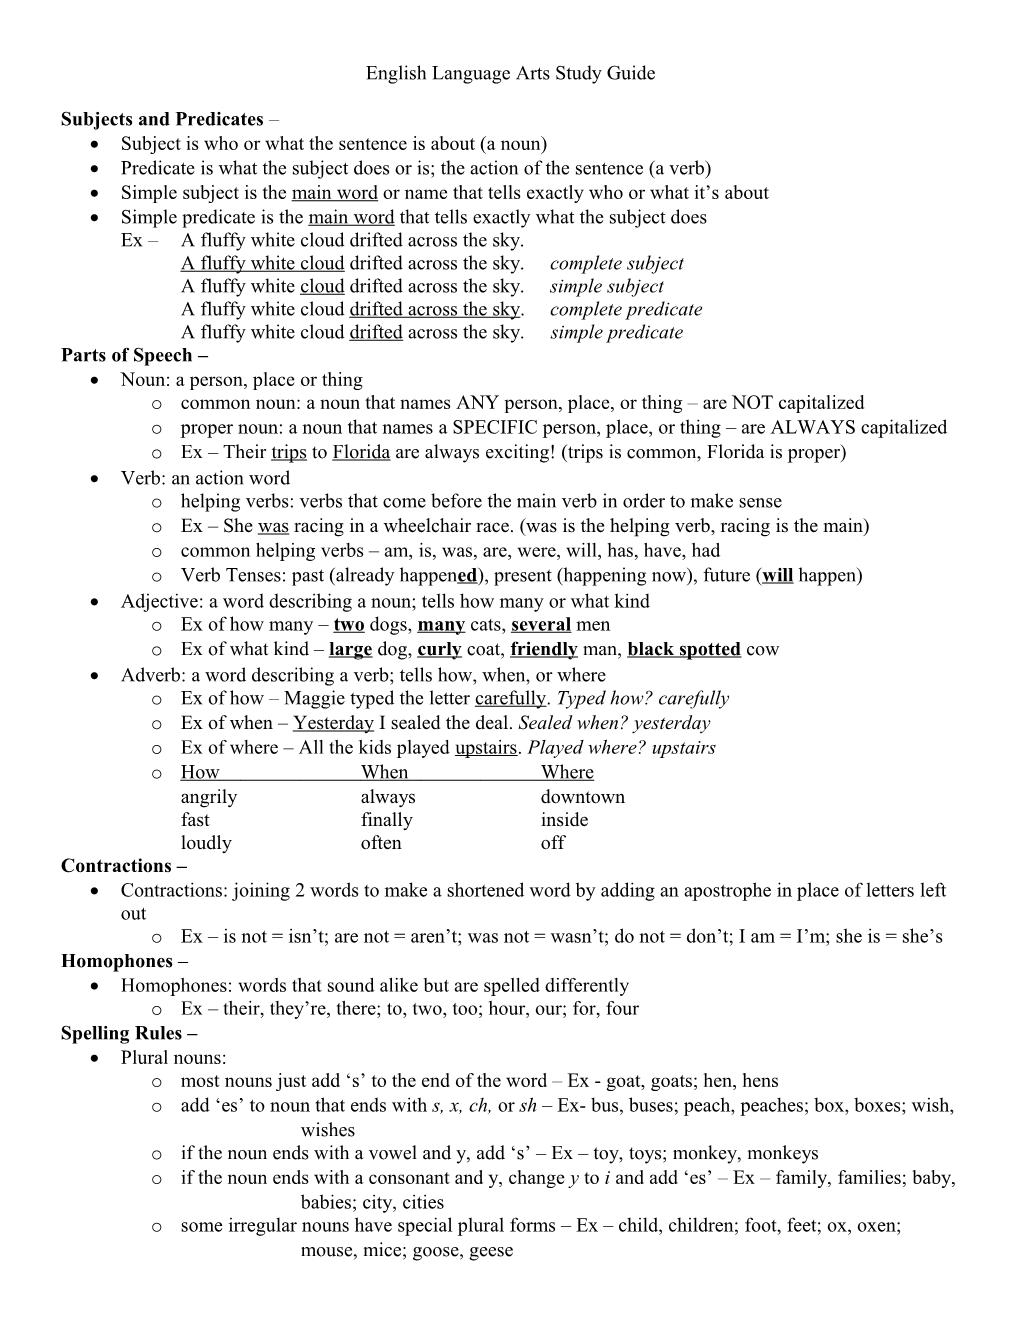 English Language Arts CRCT Study Guide